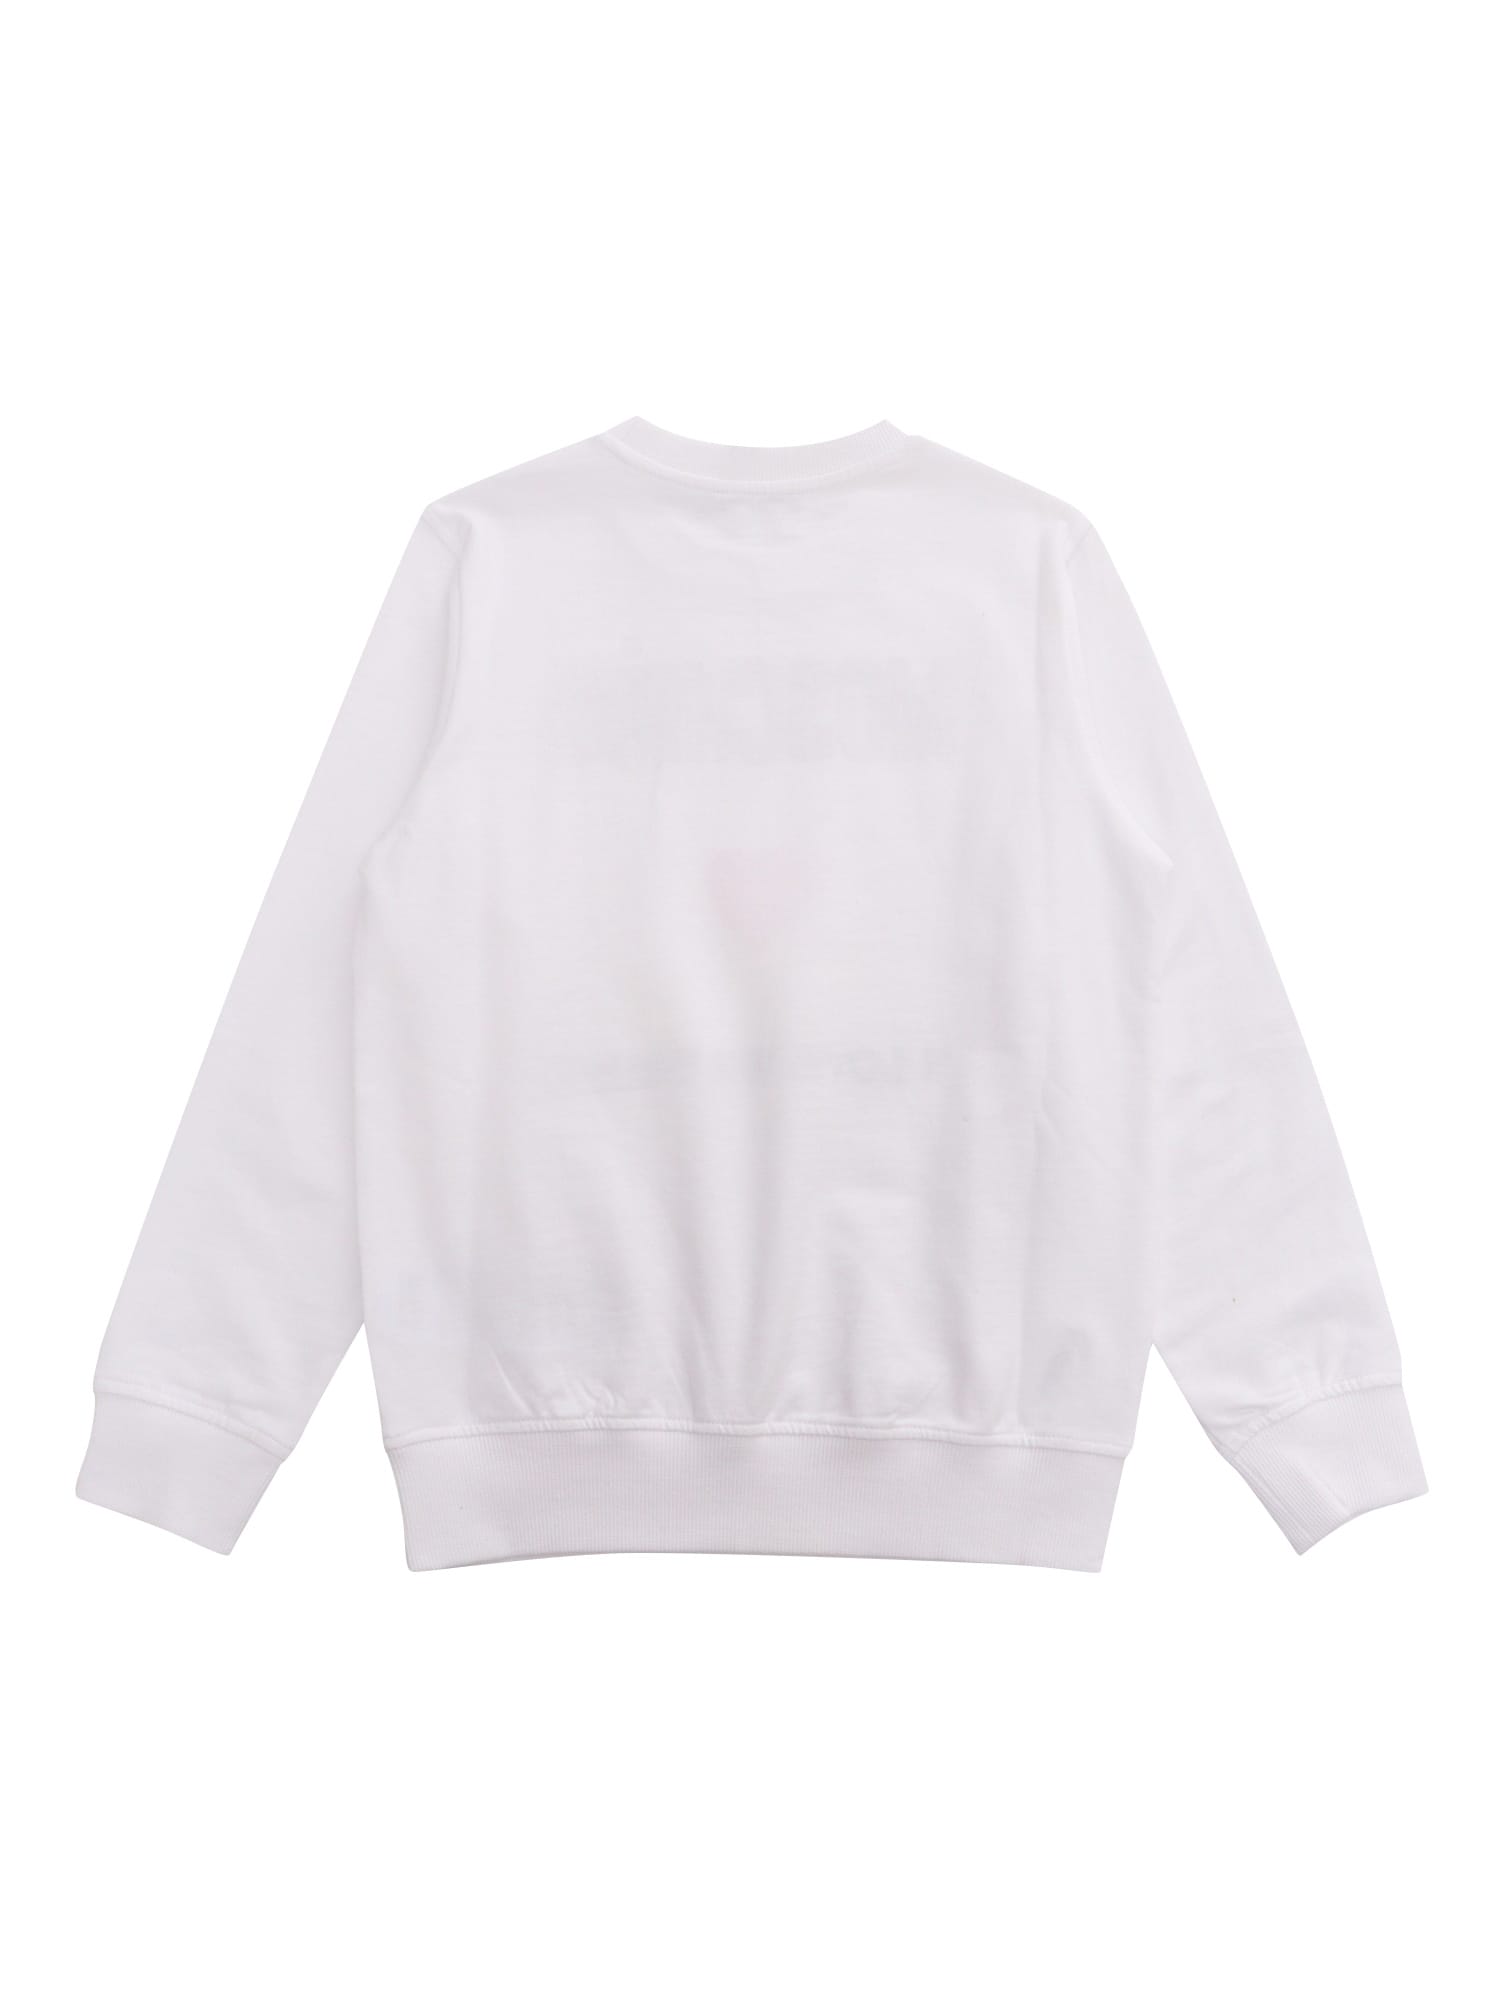 Shop Moschino White Sweatshirt